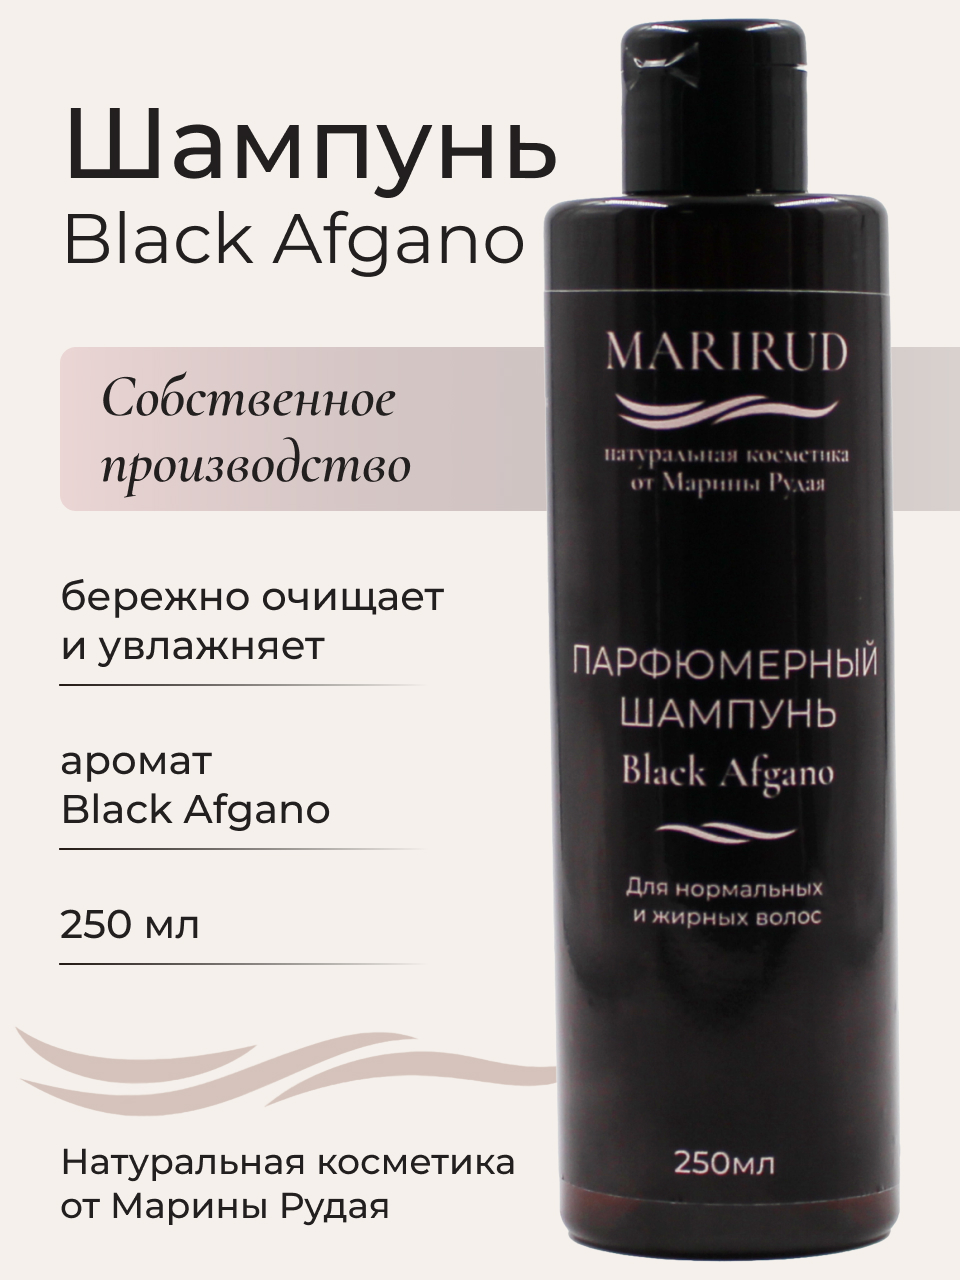 Набор парфюмерный- Шампуни Black Afgano и Tobacco Vanille подарочный набор 15 beon royal tobacco